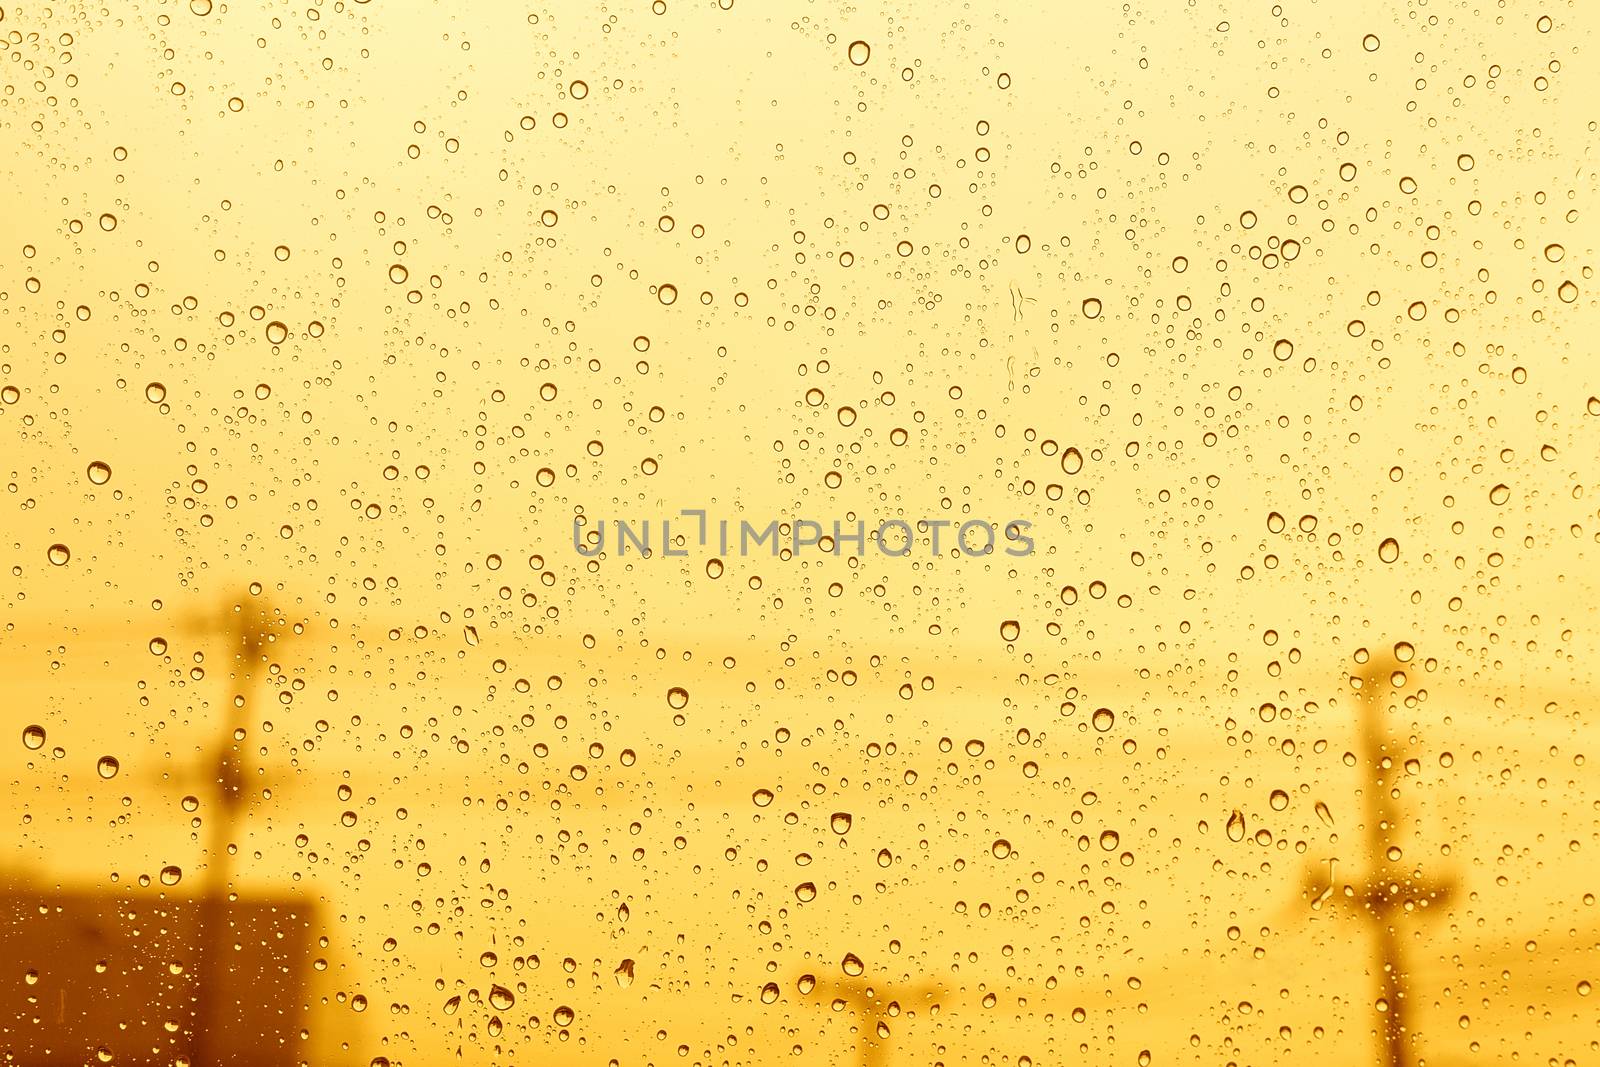 Windshield rain drop car window on sunset. by jayzynism